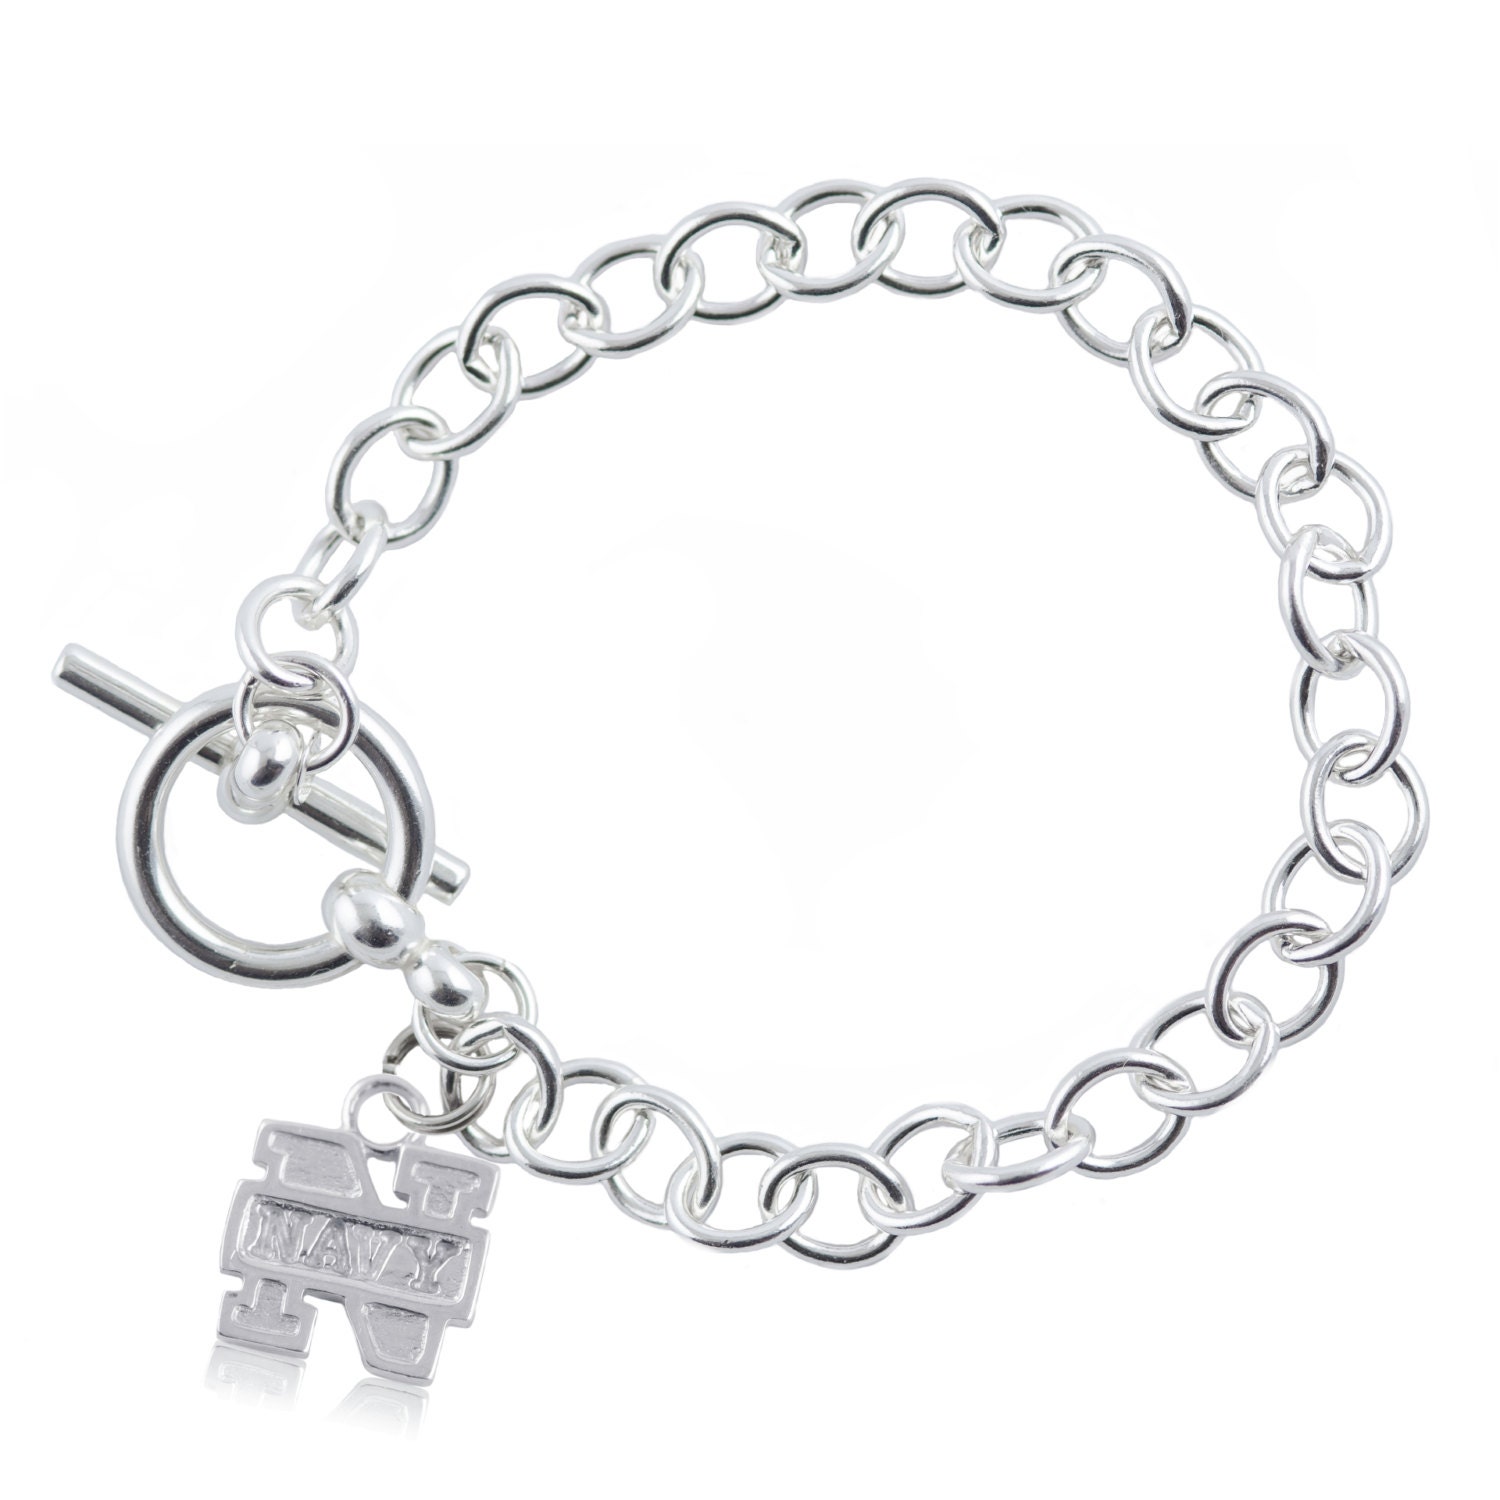 Navy Sterling Silver Link Bracelet USNA-6140 by FabFanShop on Etsy